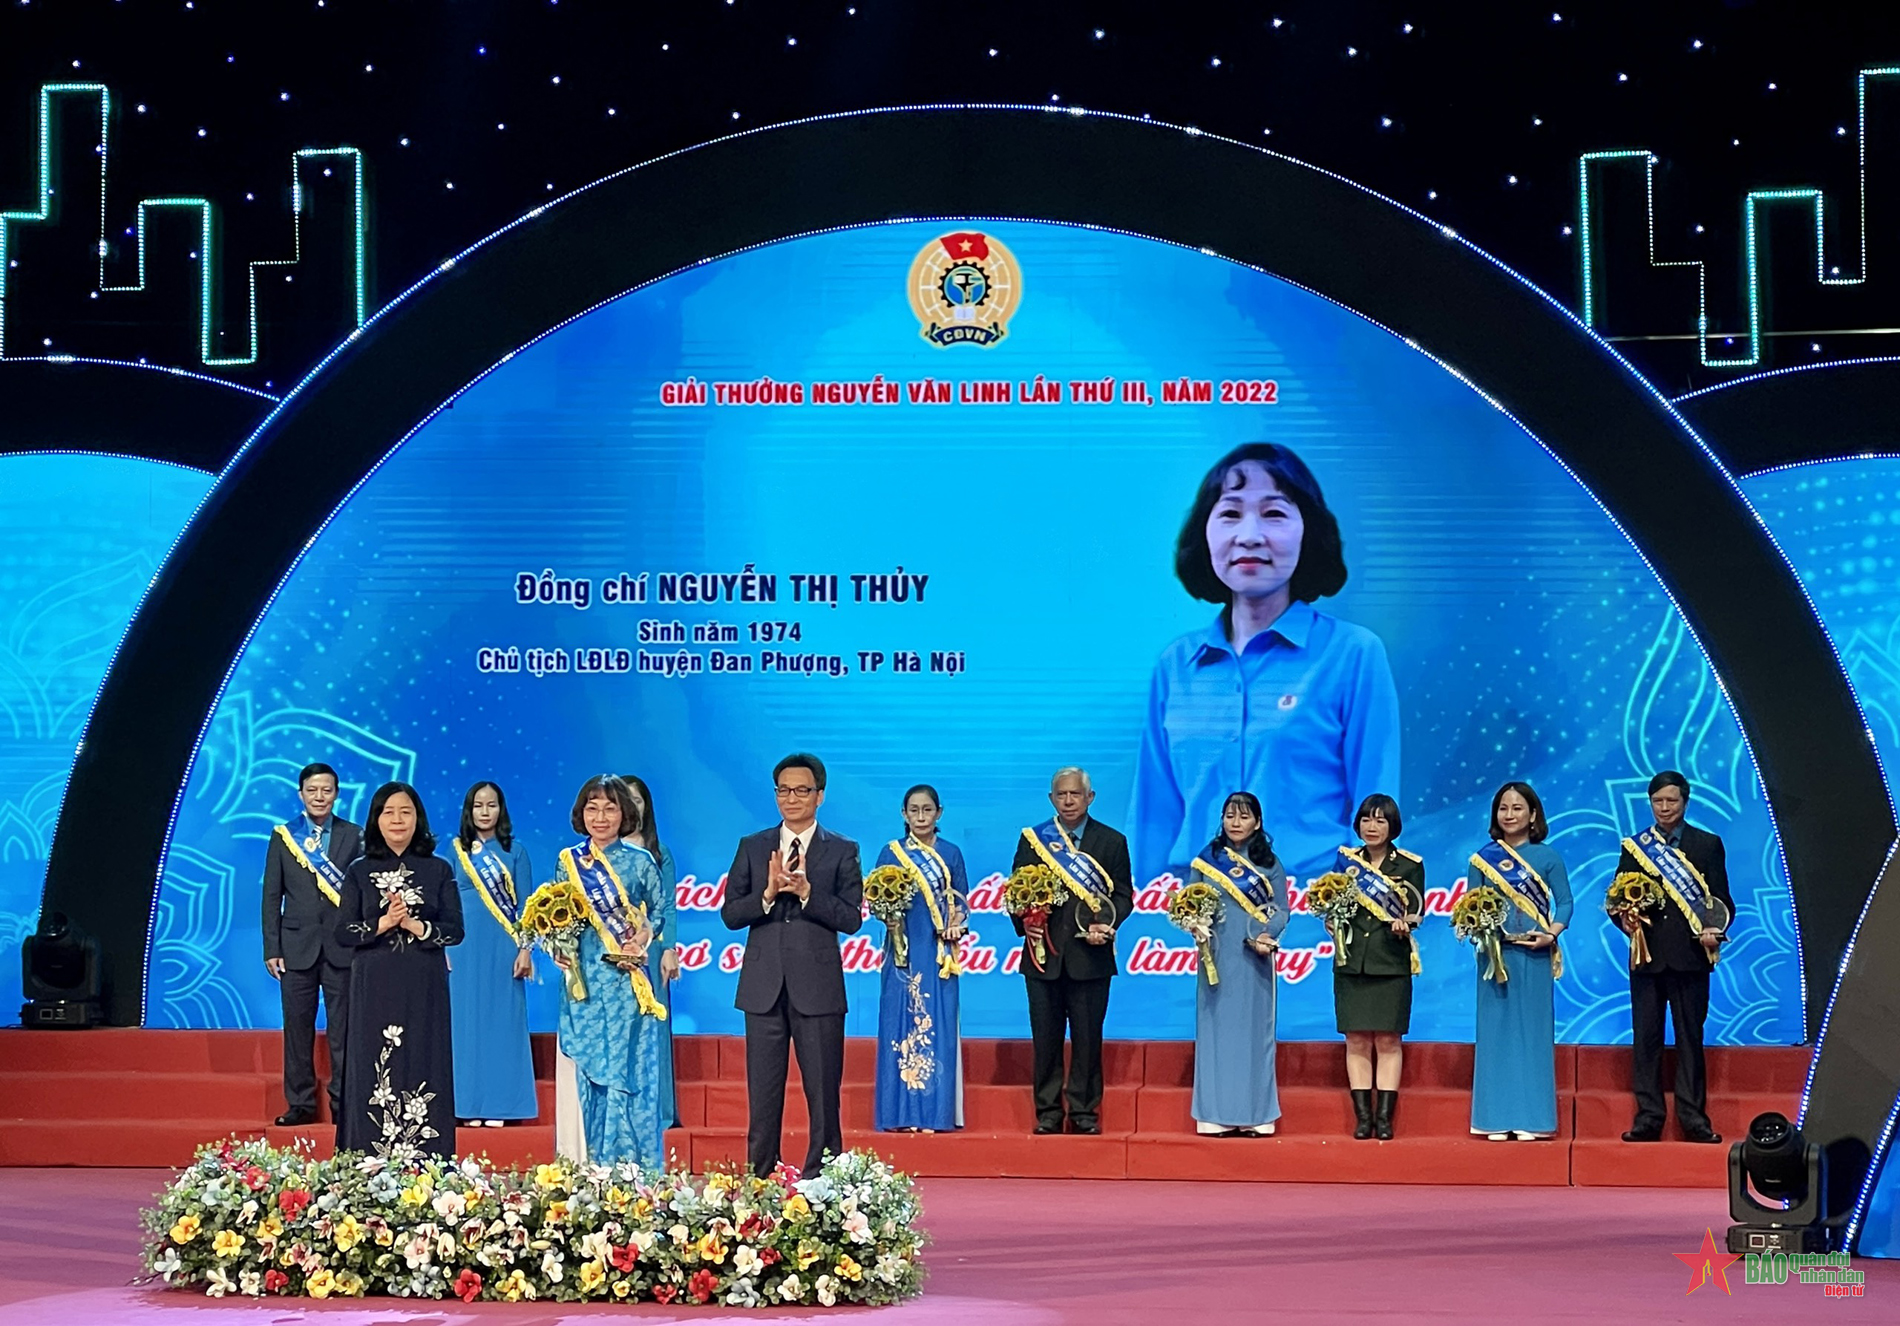 Ai được xét tặng giải thưởng Nguyễn Văn Linh từ tổ chức Công đoàn Việt Nam?